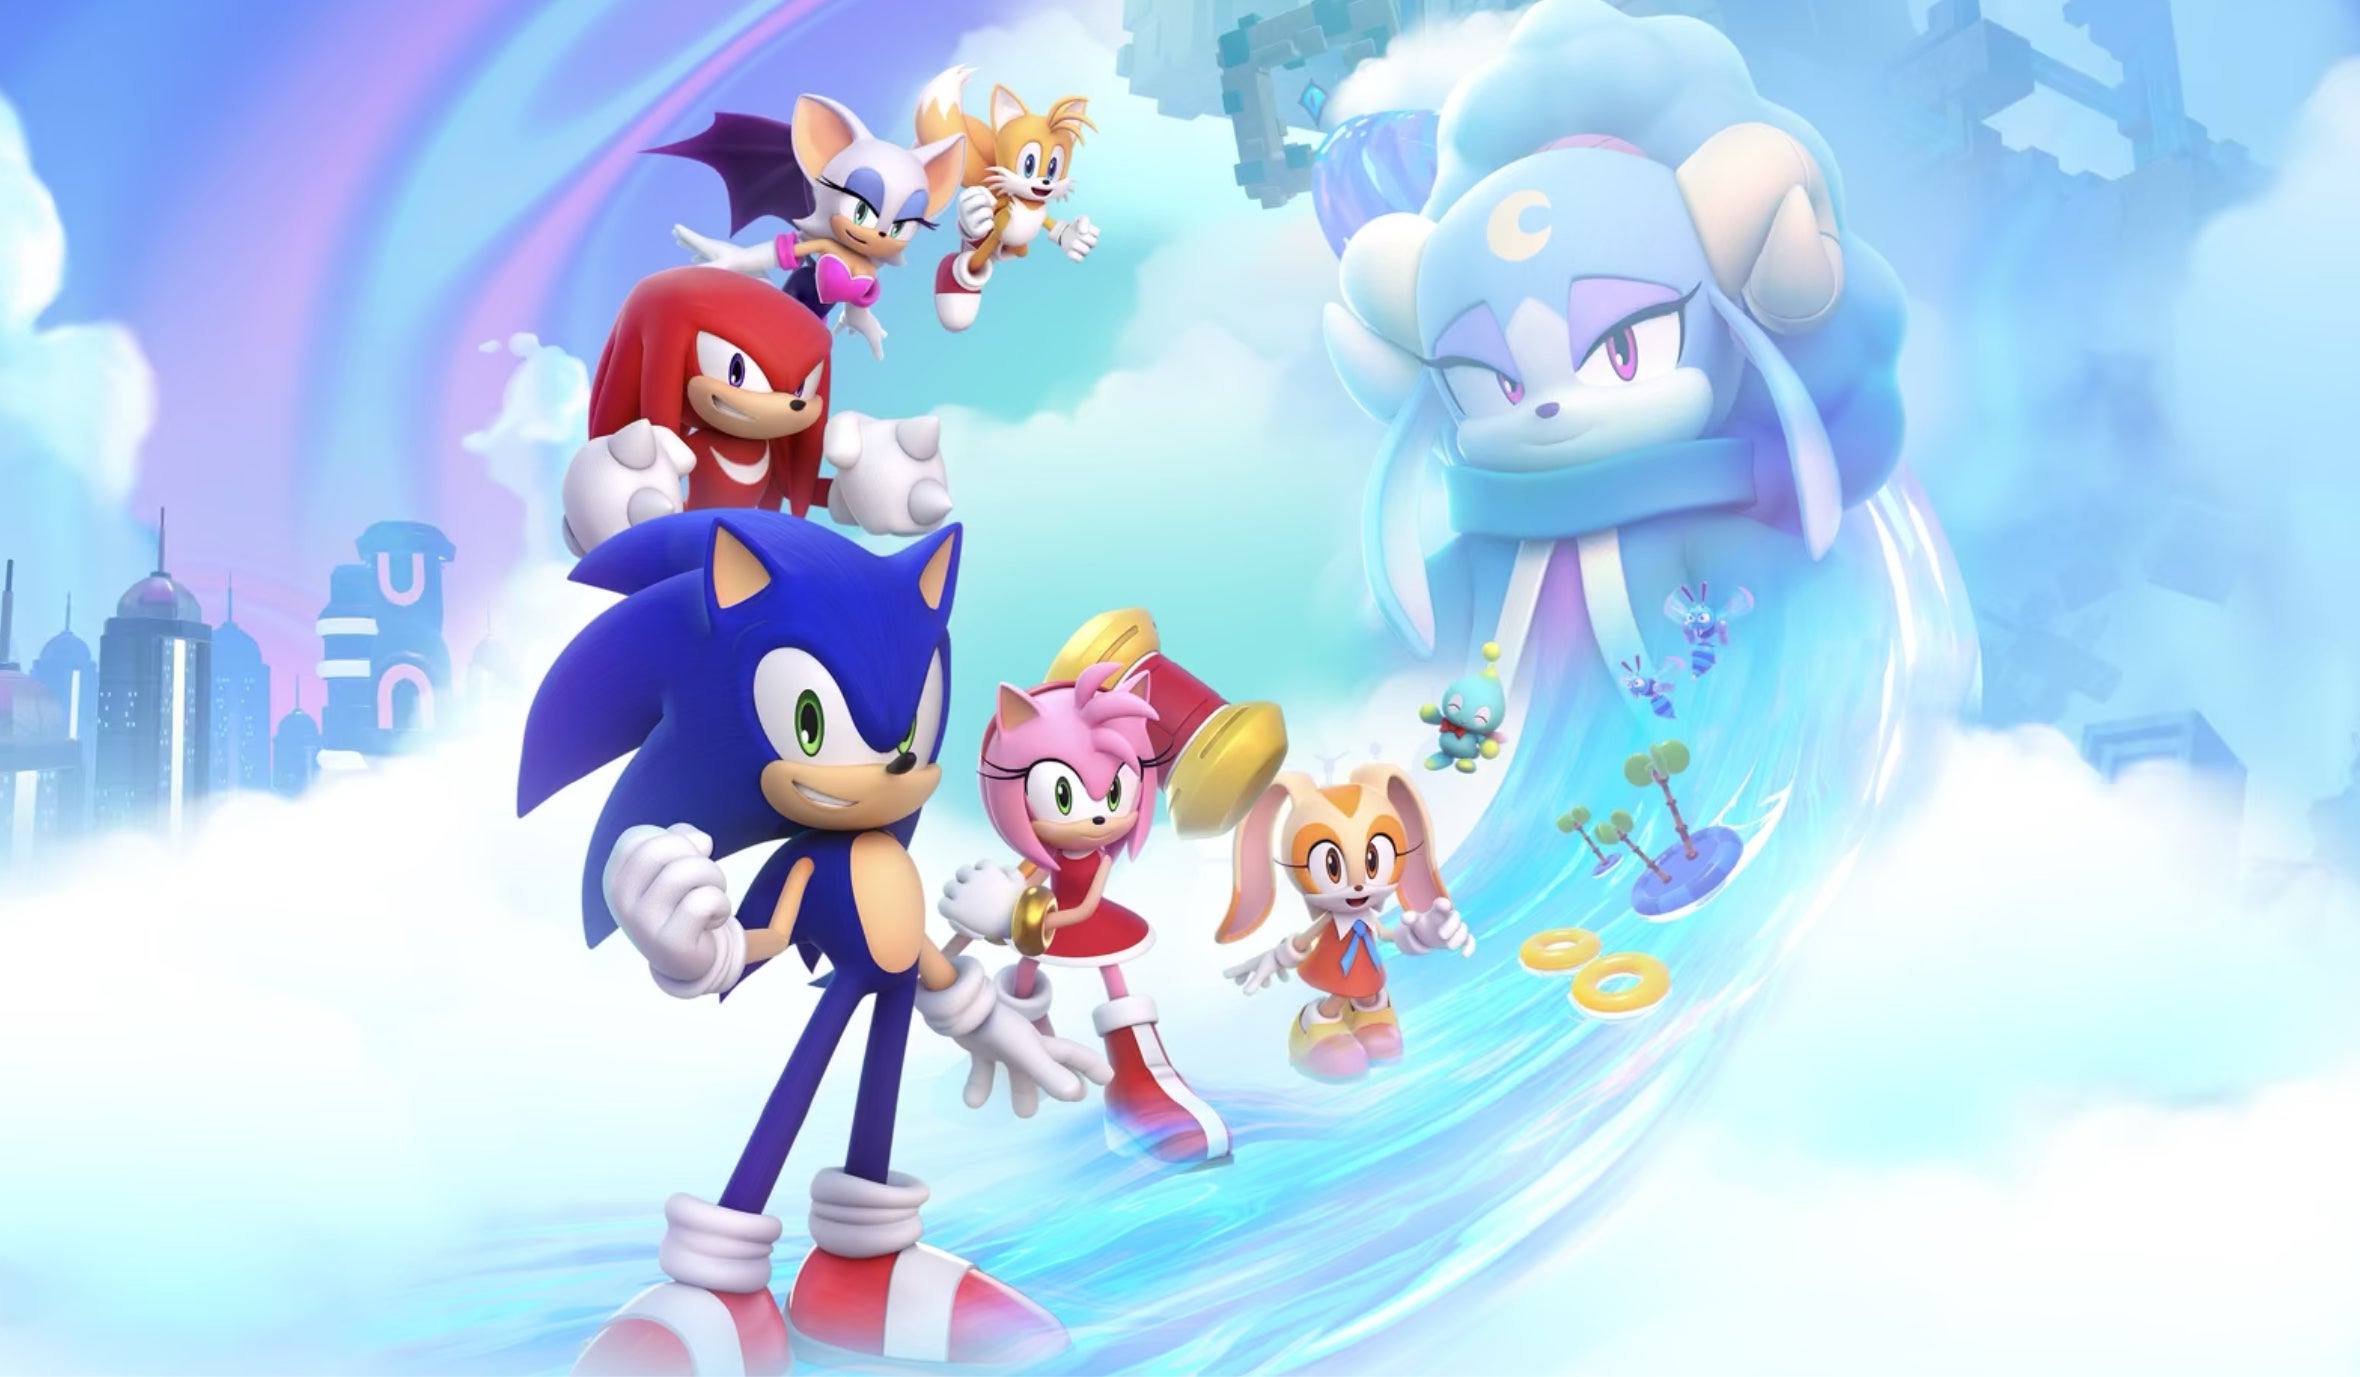 SEGA revela novo jogo Sonic the Hedgehog em 3D para Apple Arcade - Tô Na  Fama! - IG